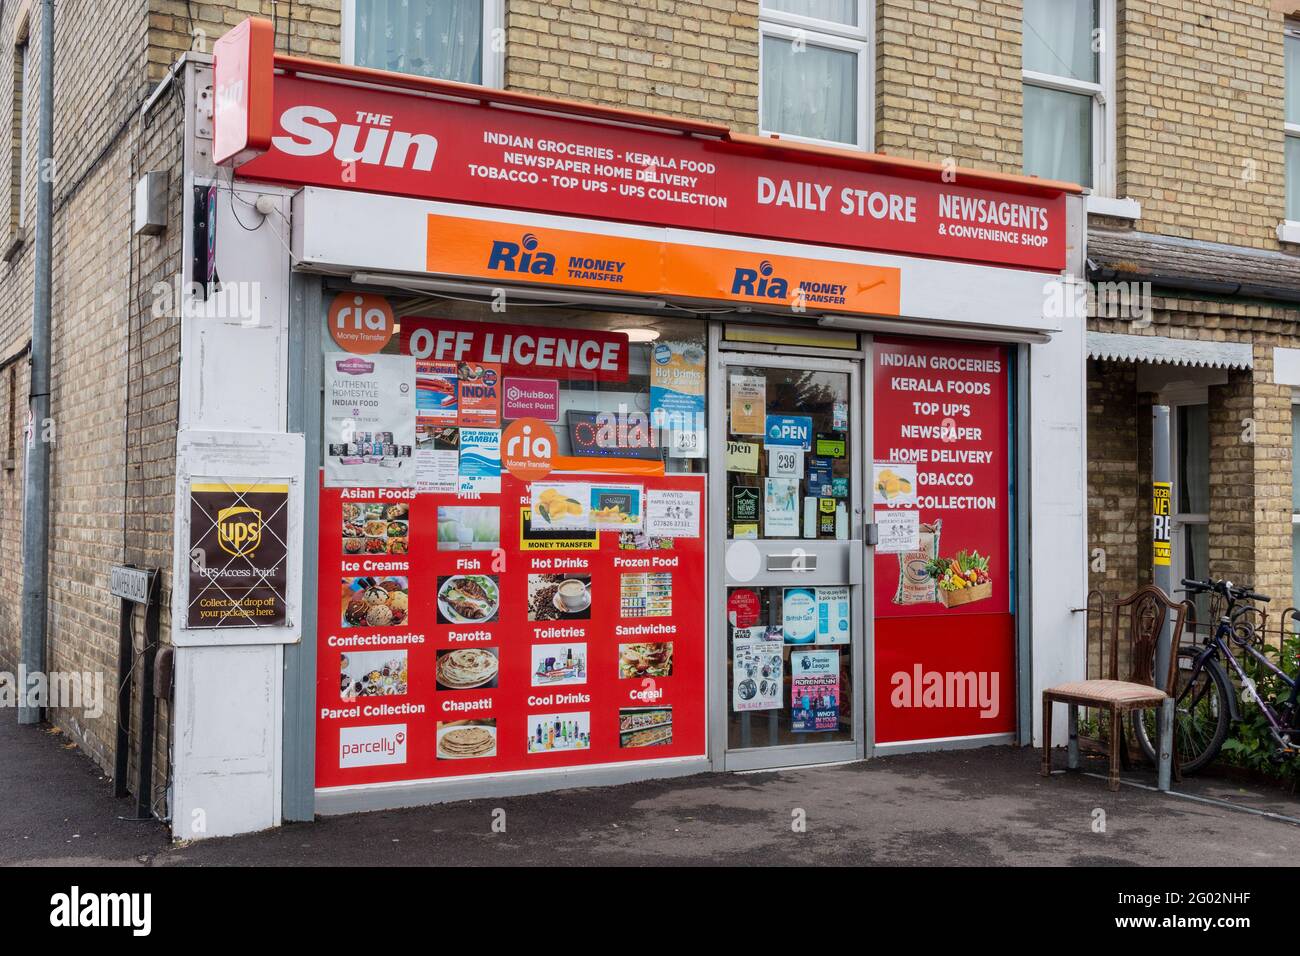 Le Daily Store Newsagent sur Cherry Hinton Road, Cambridge, Royaume-Uni offre une large gamme de services, y compris hors licence, le transfert d'argent Ria et UPS col Banque D'Images